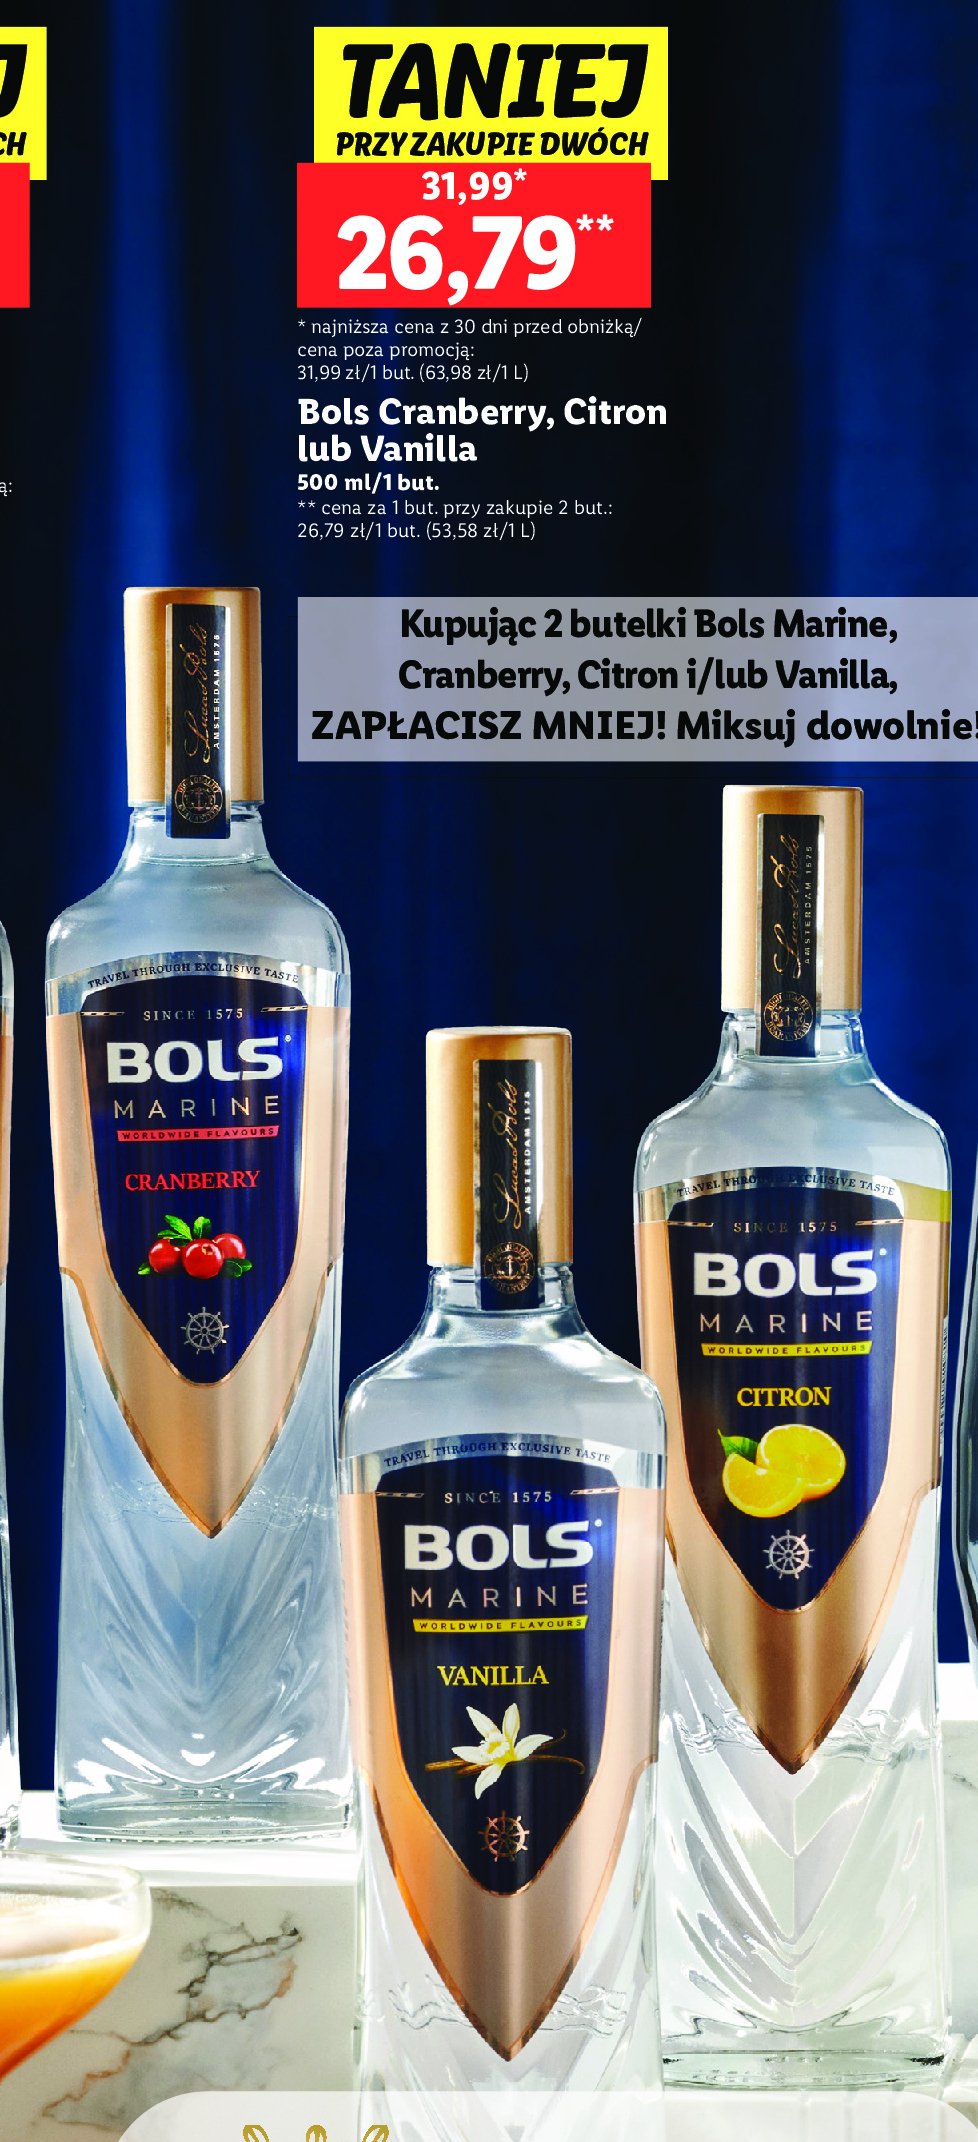 Wódka vanilla Bols marine promocja